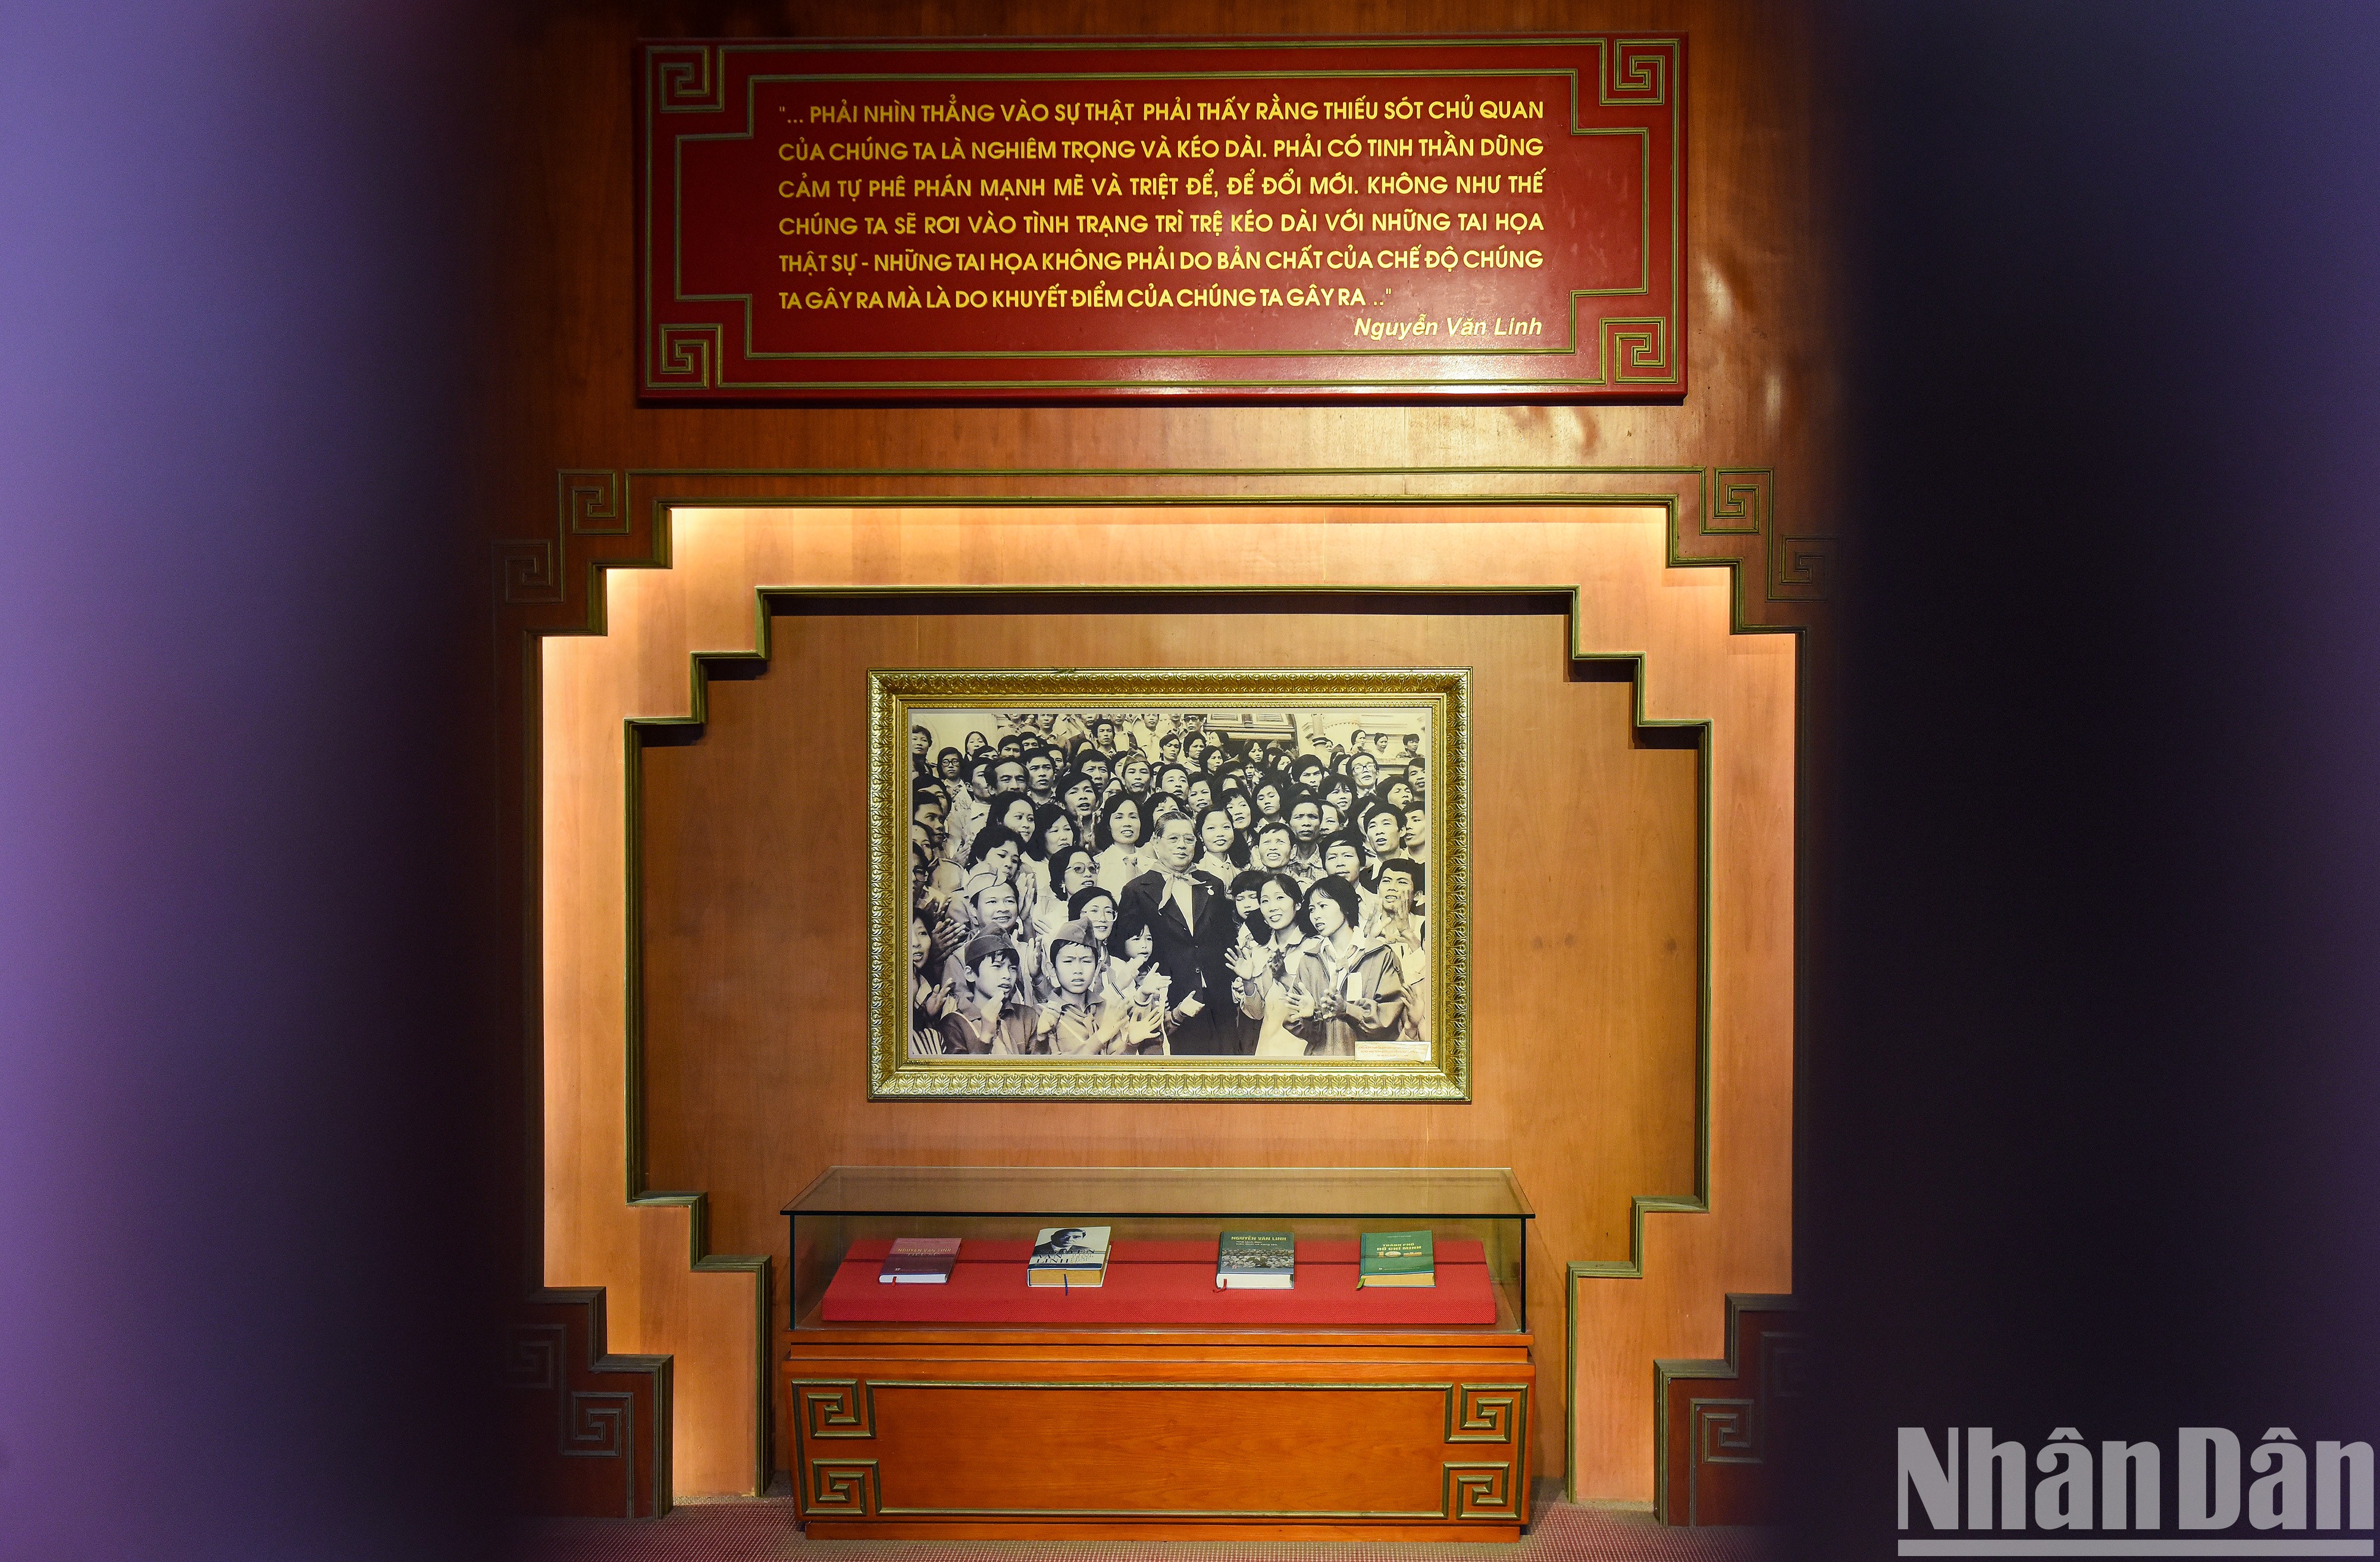 Посещаем мемориальный комплекс Генерального секретаря ЦК КПВ Нгуен Ван Линя